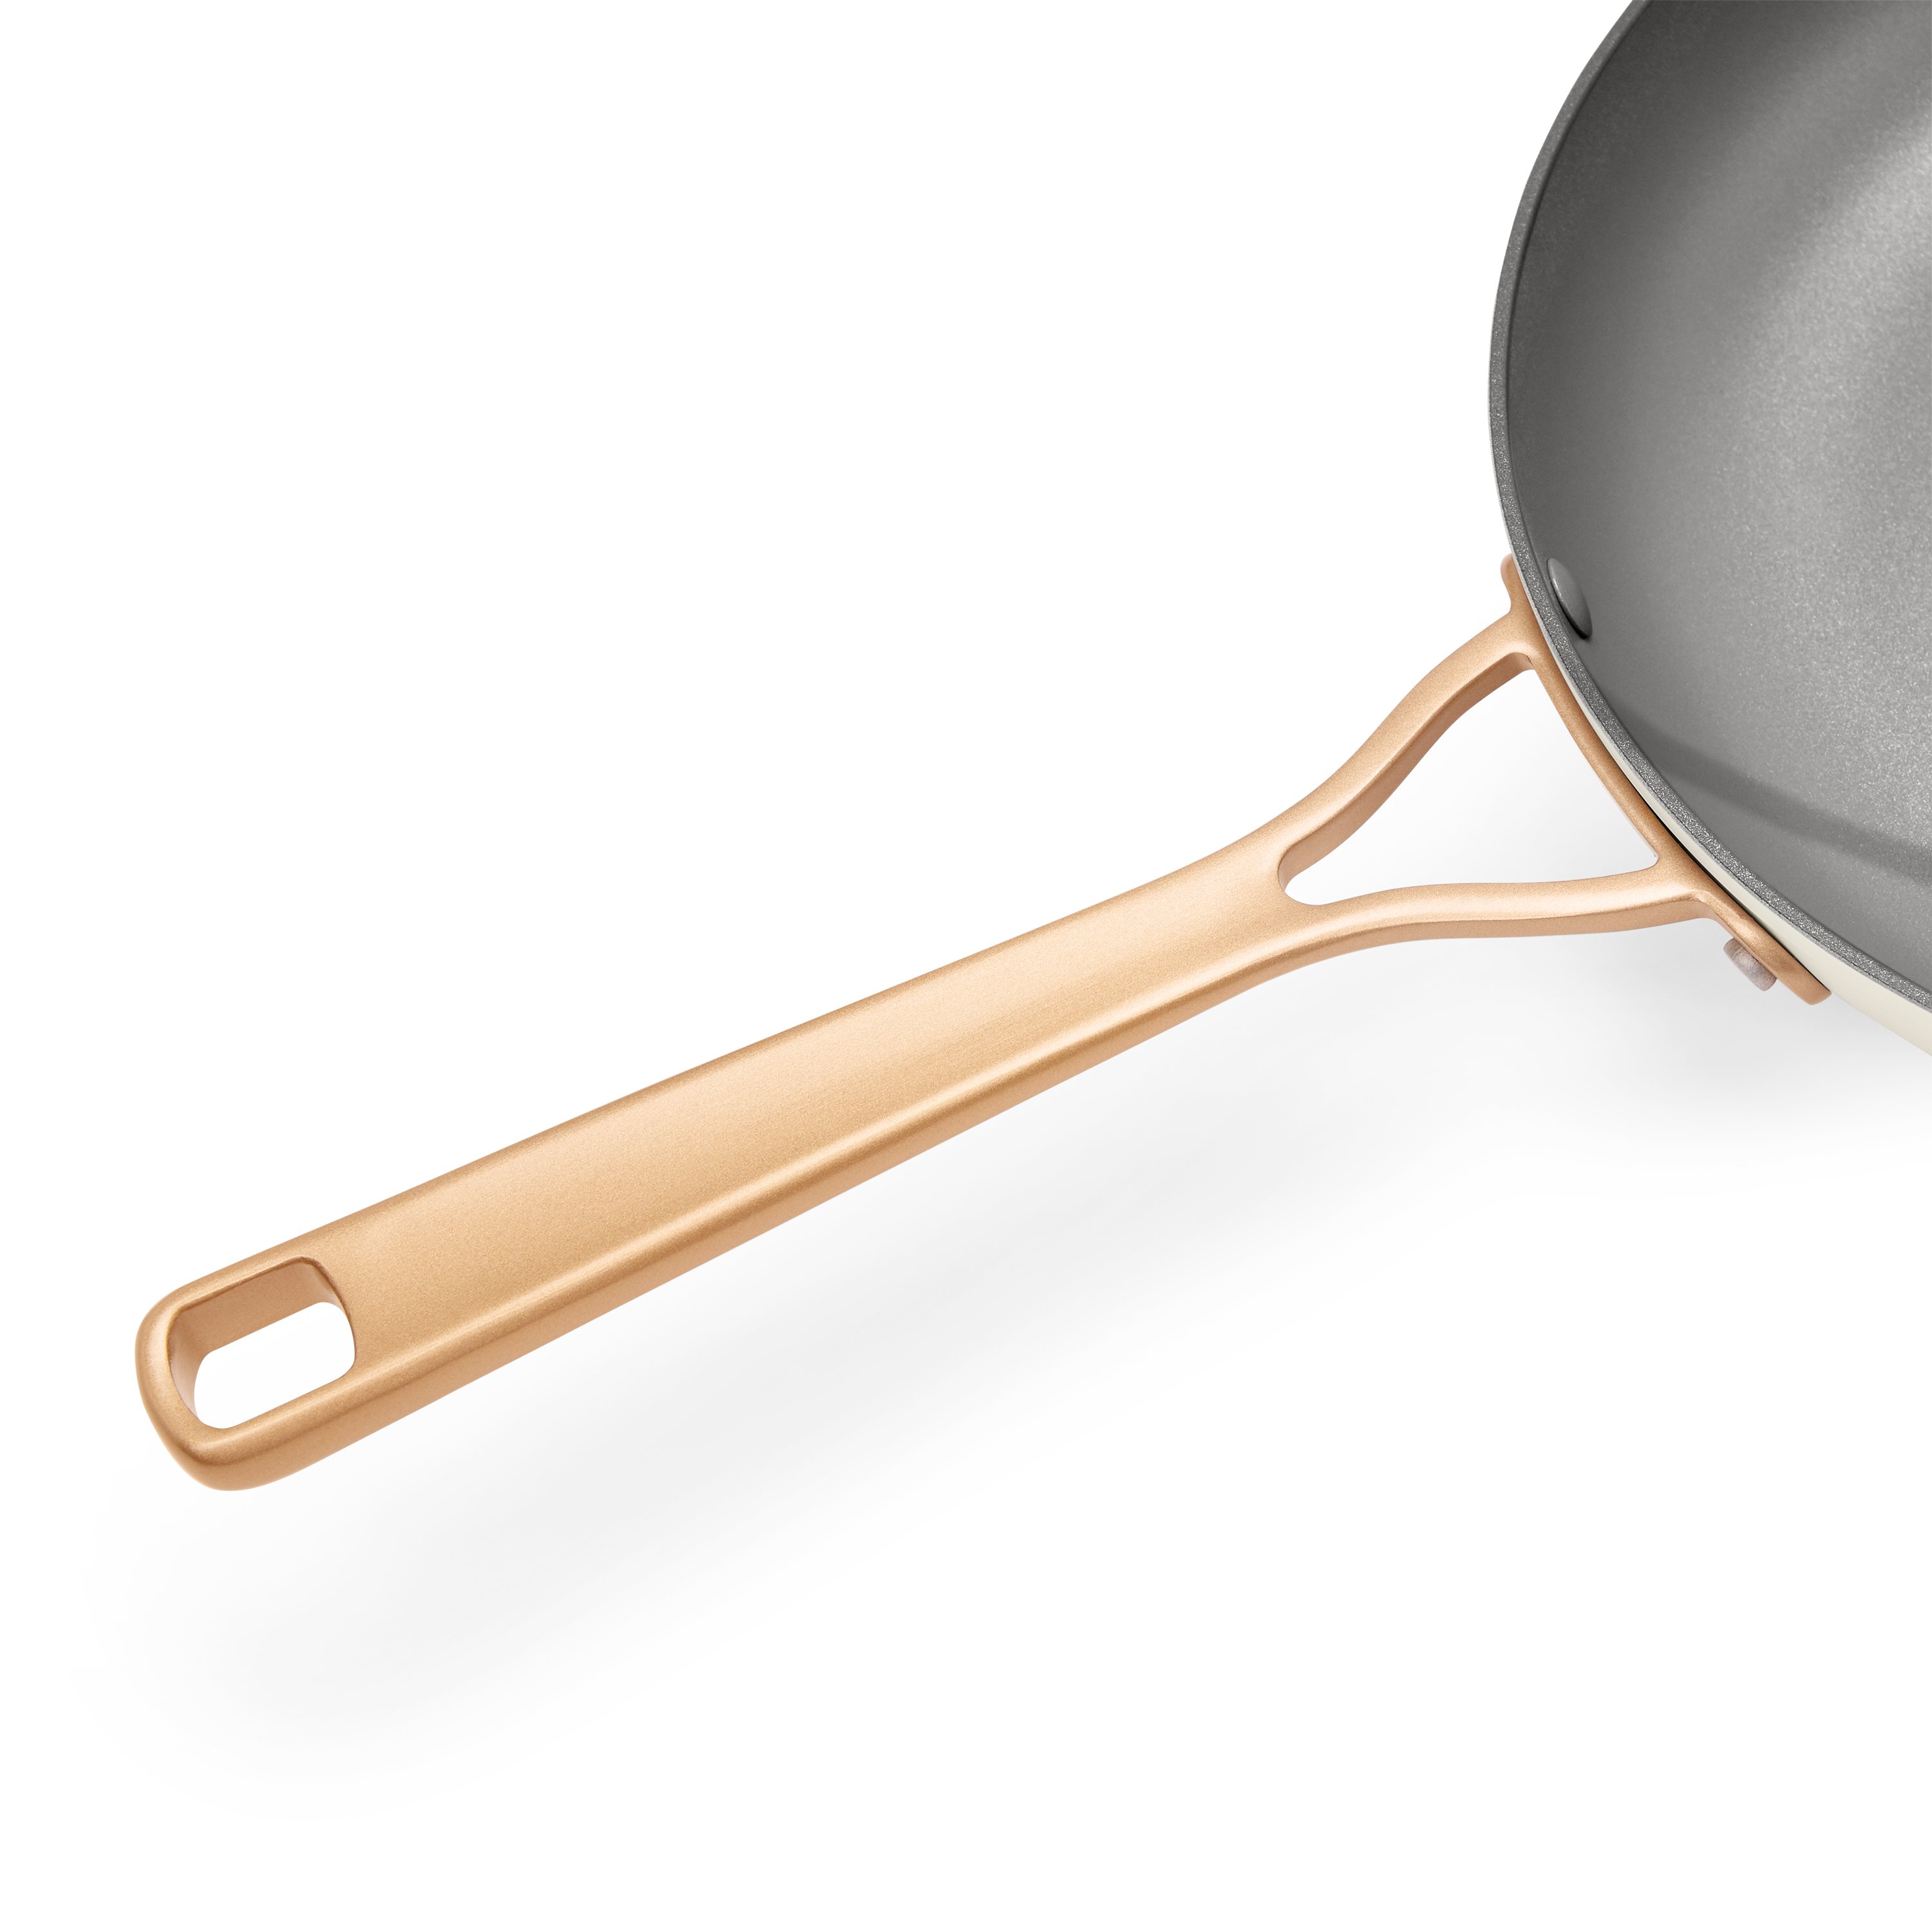 Lodge Carbon Steel Skillet - Shop Frying Pans & Griddles at H-E-B